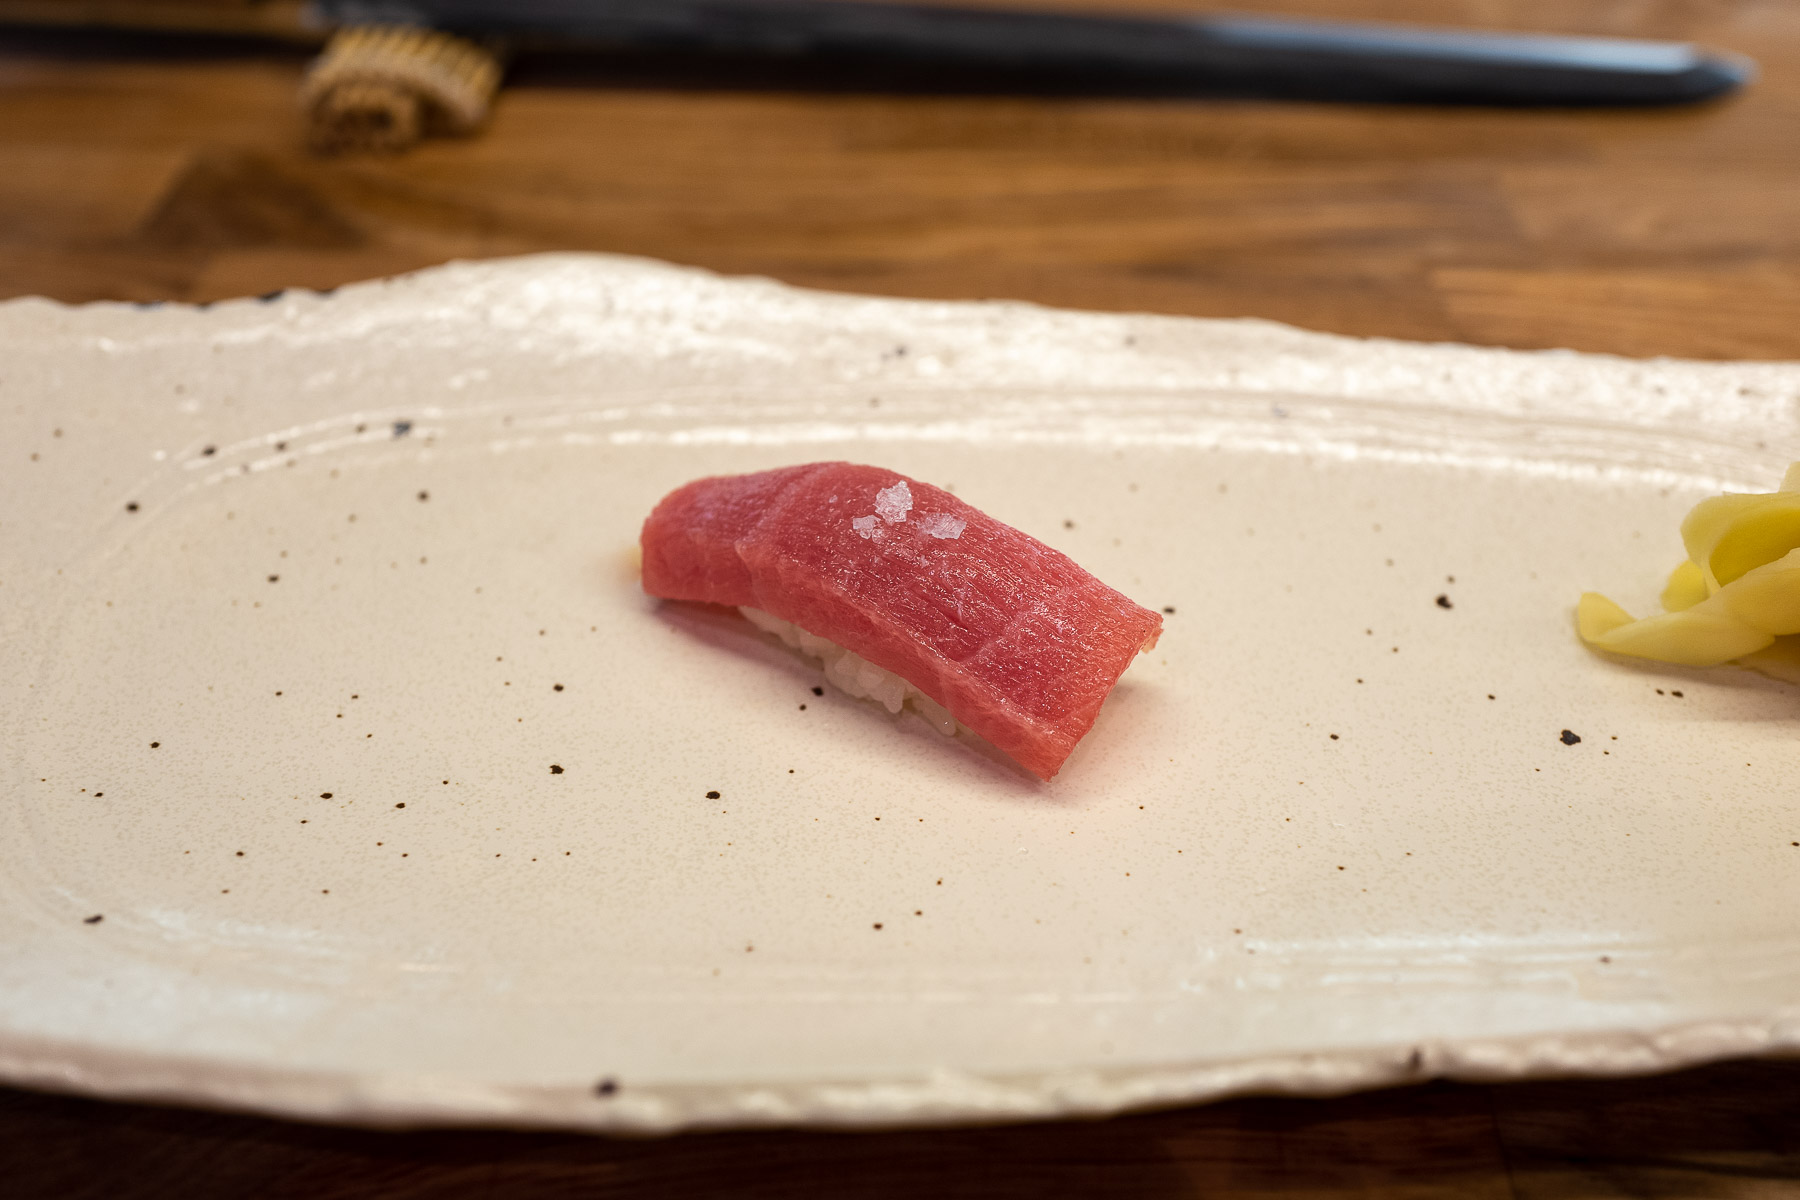 chutoro (średniotłusta część tuńczyka błękitnopłetwego) z solą